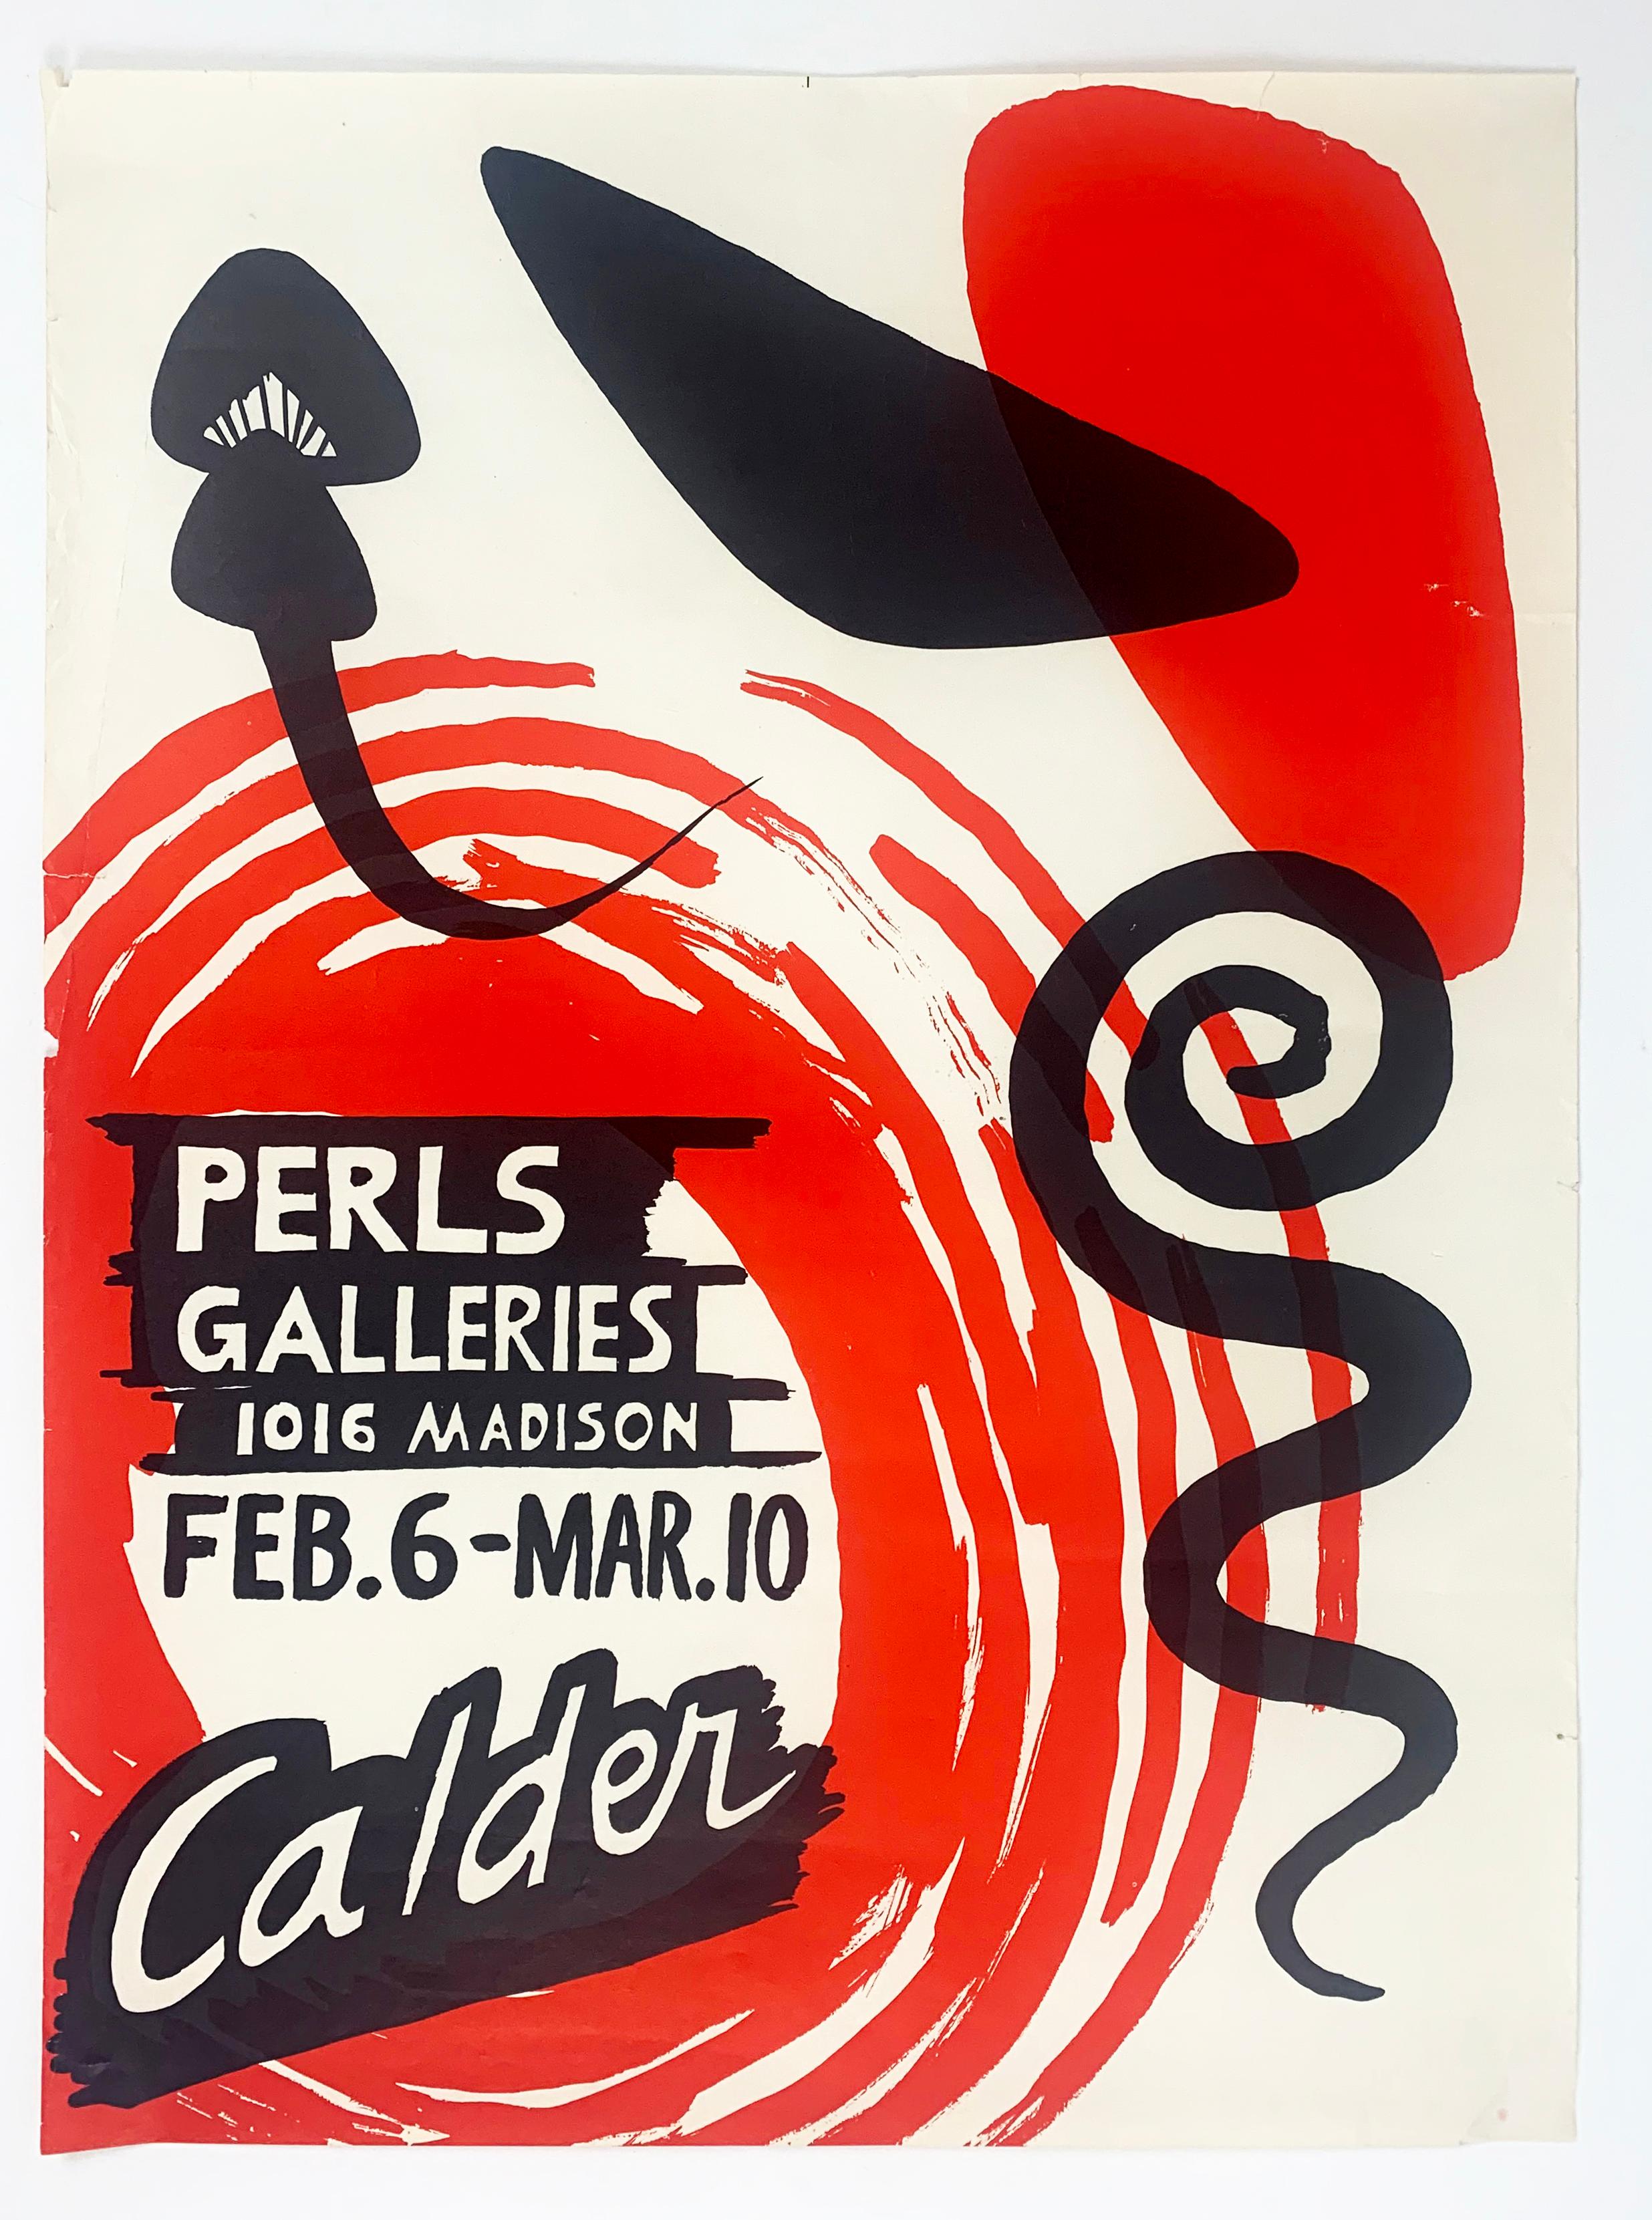 Perls Galleries Exhibition Poster - Print by Alexander Calder